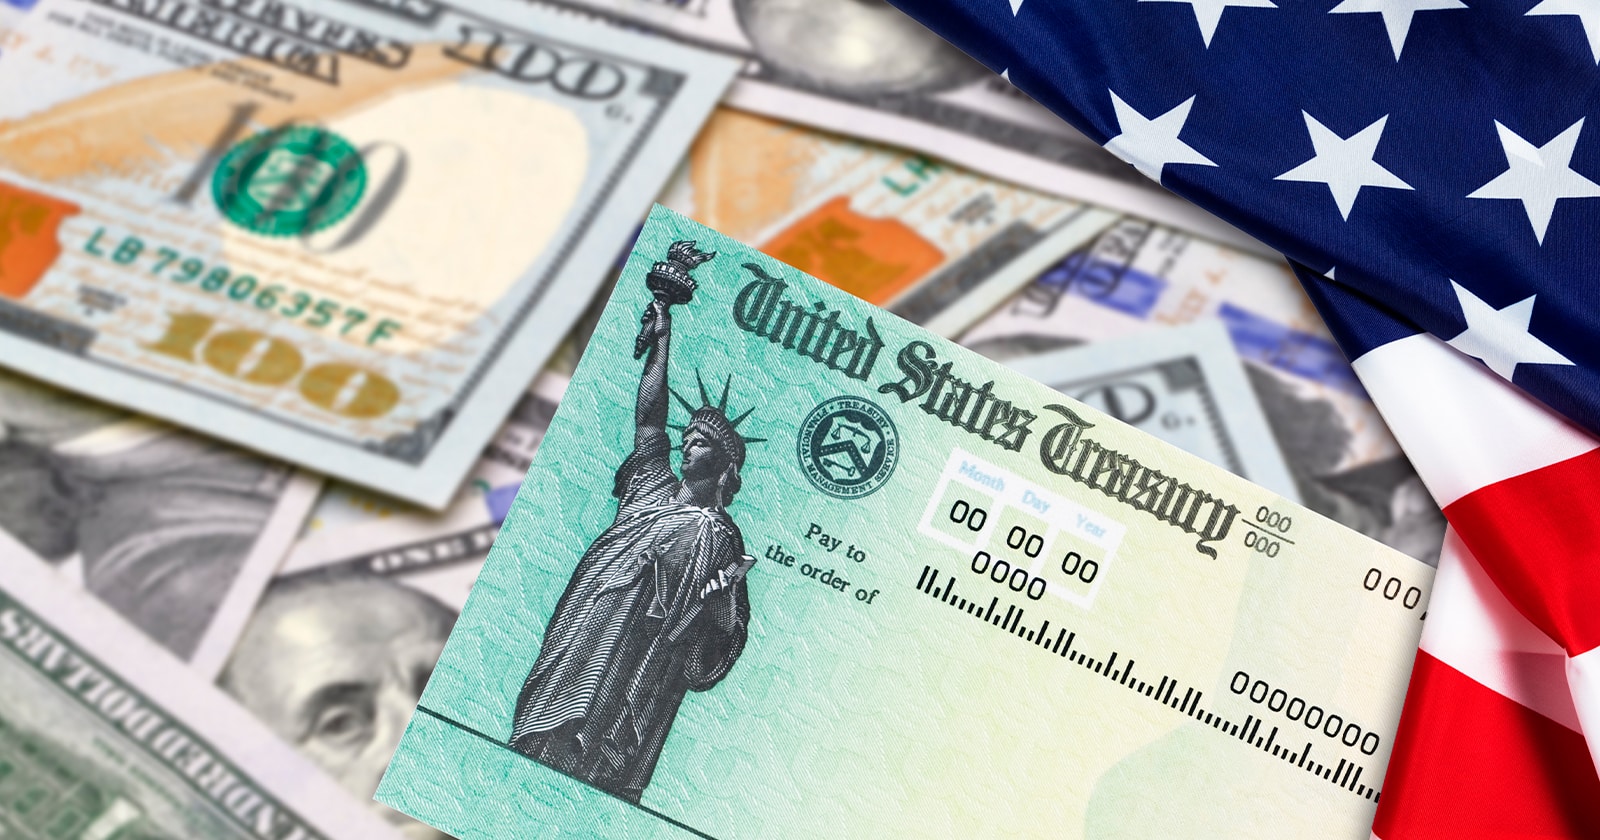 Cheque de Estímulo de Hasta $1,000 Dólares en Pensilvania: Mira si Calificas